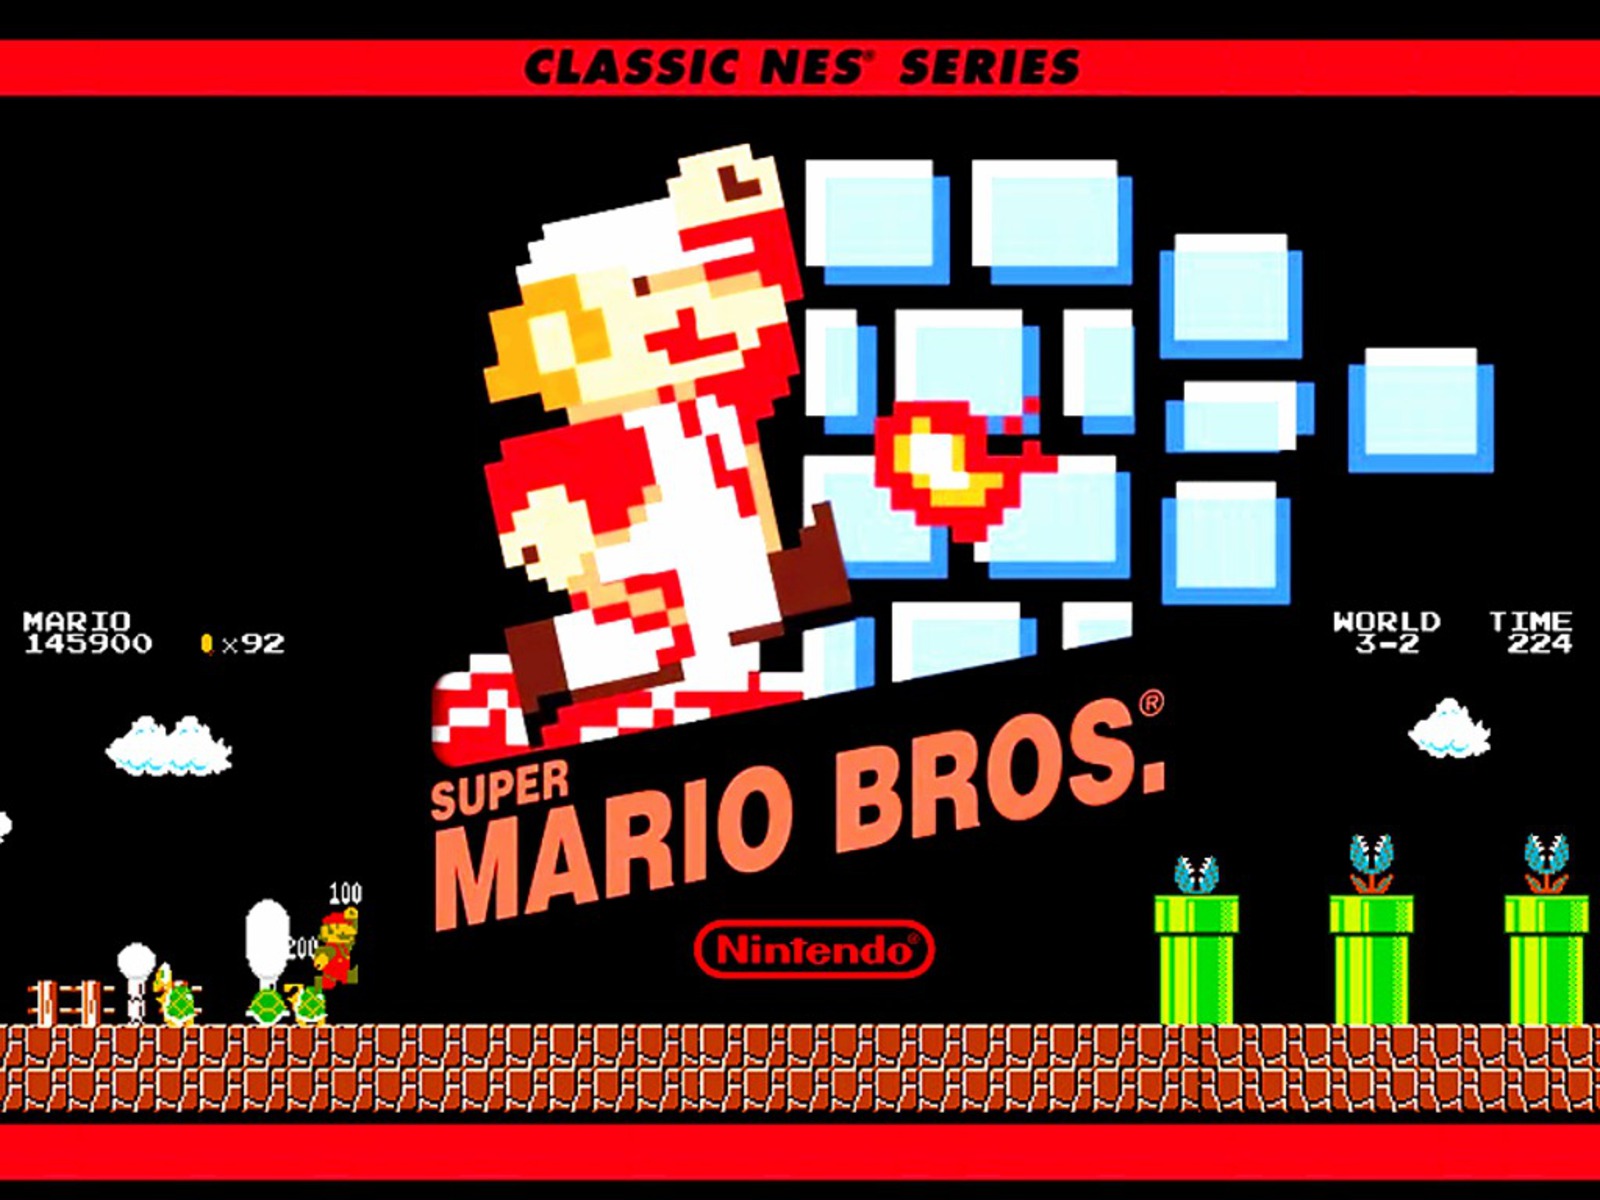 Смотри видео Прохождение игры Super Mario Bros NES/DENDY онлайн бесплатно н...